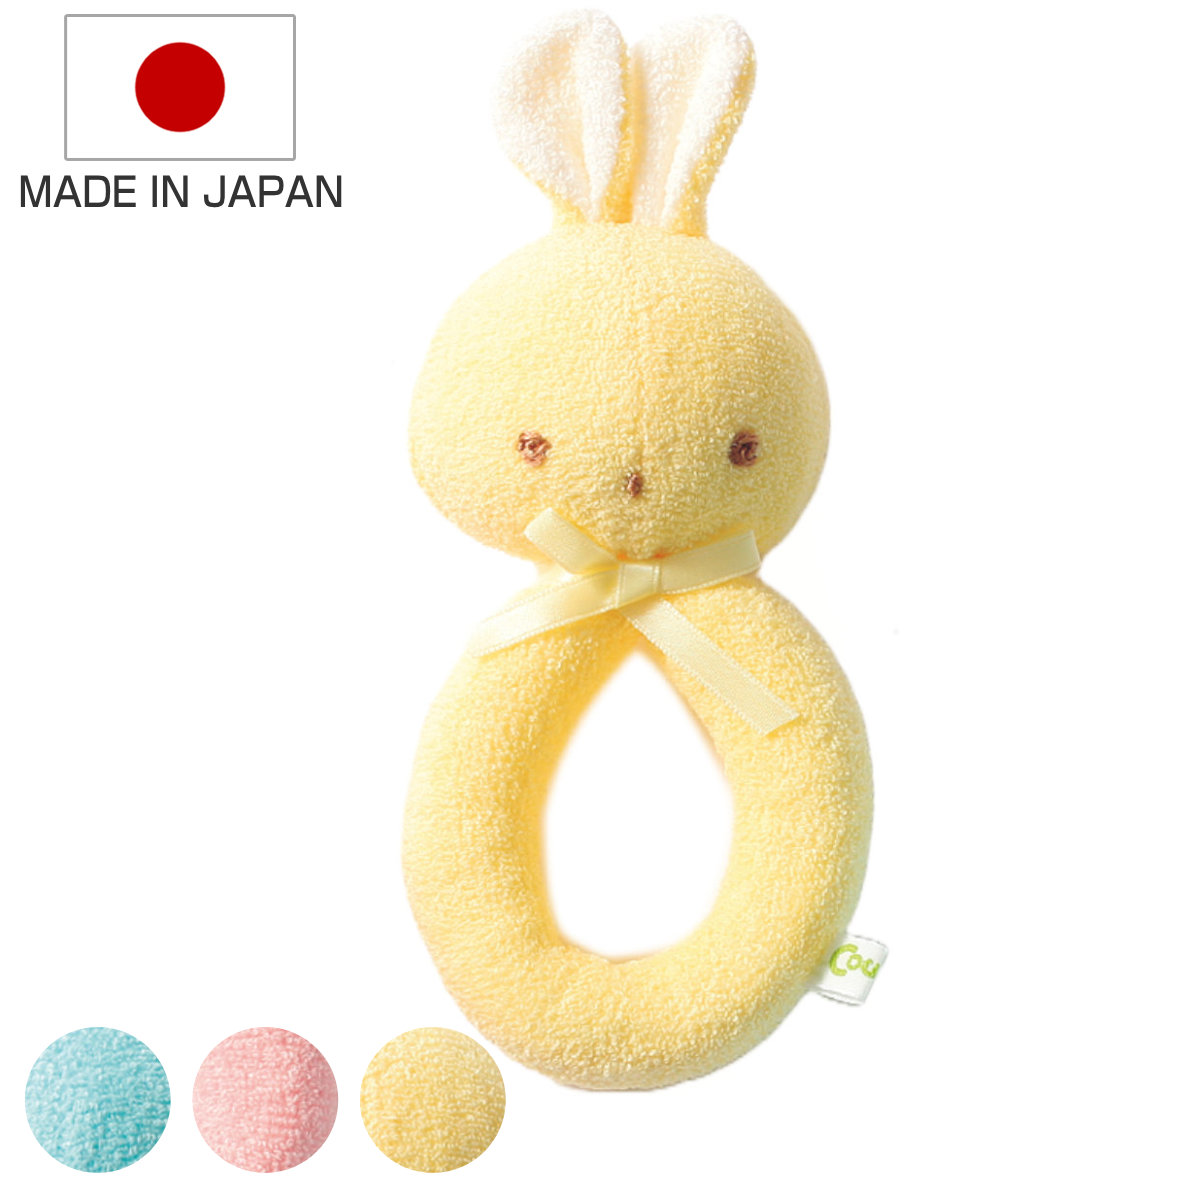 ガラガラ うさぎのガラガラ 赤ちゃん ぬいぐるみ 日本製 （ おもちゃ 玩具 がらがら ベビー プレゼント ギフト かわいい ベビートイ ベビ